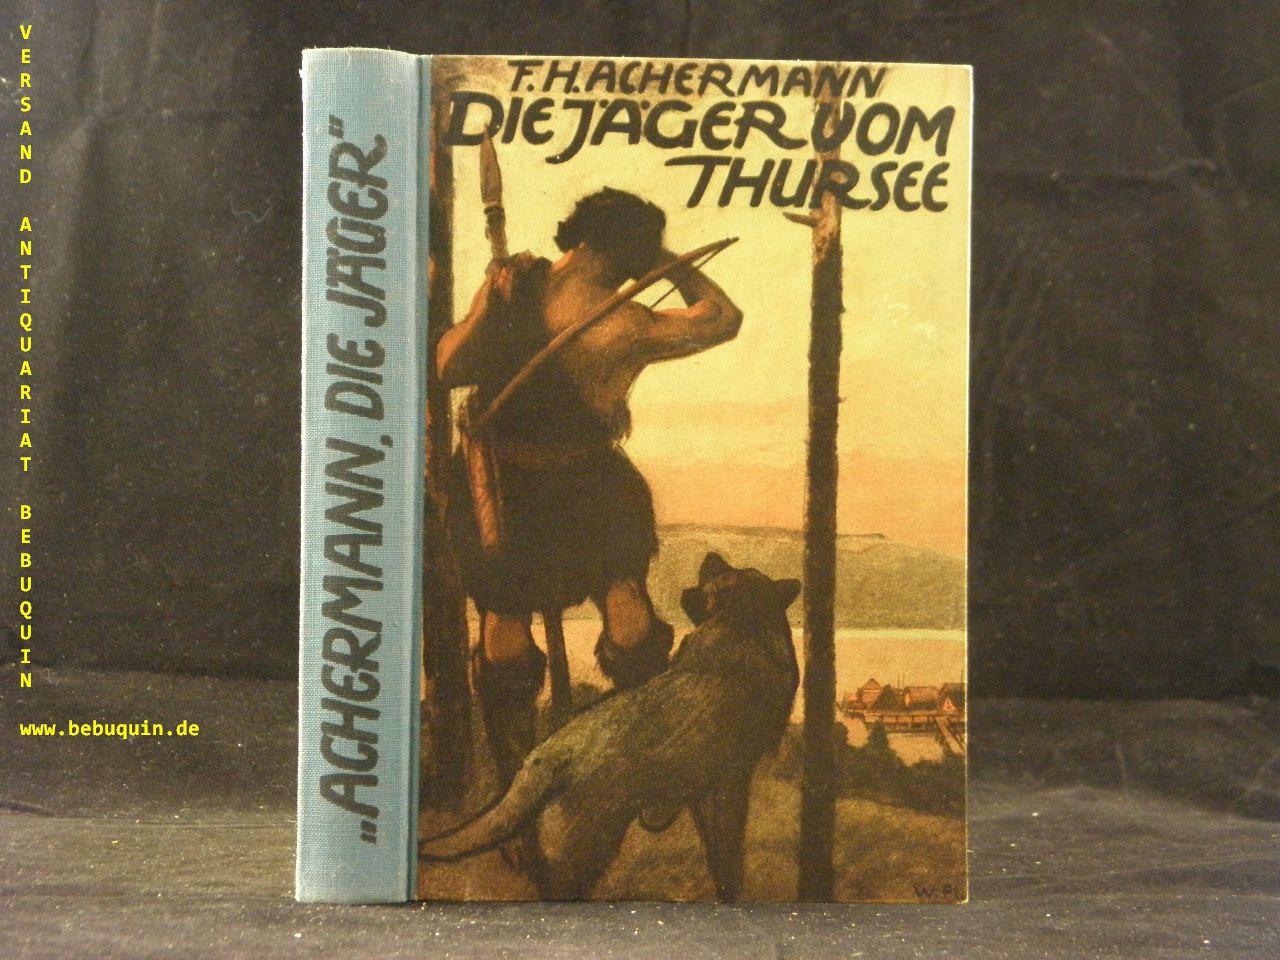 ACHERMANN, F.H.: - Die Jger vom Thursee. Roman aus den Wildnissen der Steinzeit.